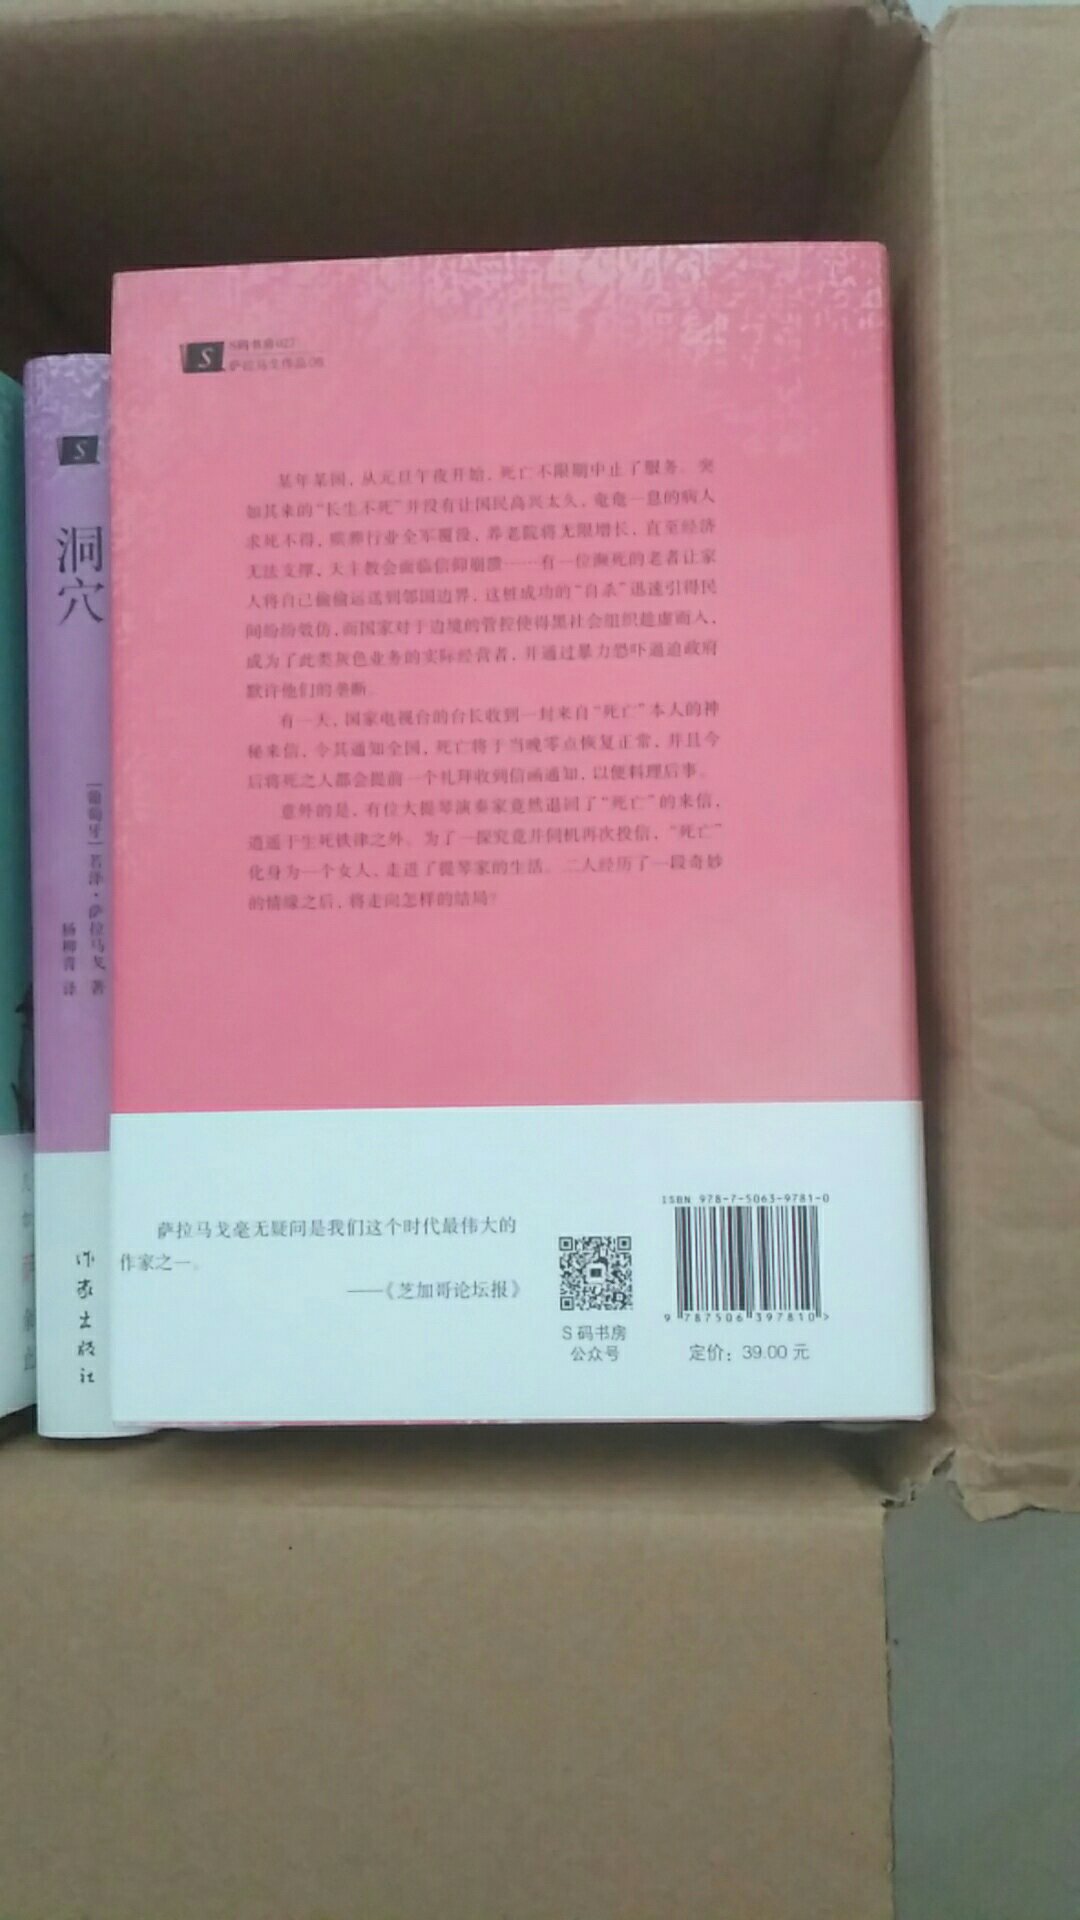 书很好，萨拉马戈是我最喜欢的作家之一，希望他的书在中国能多出几本